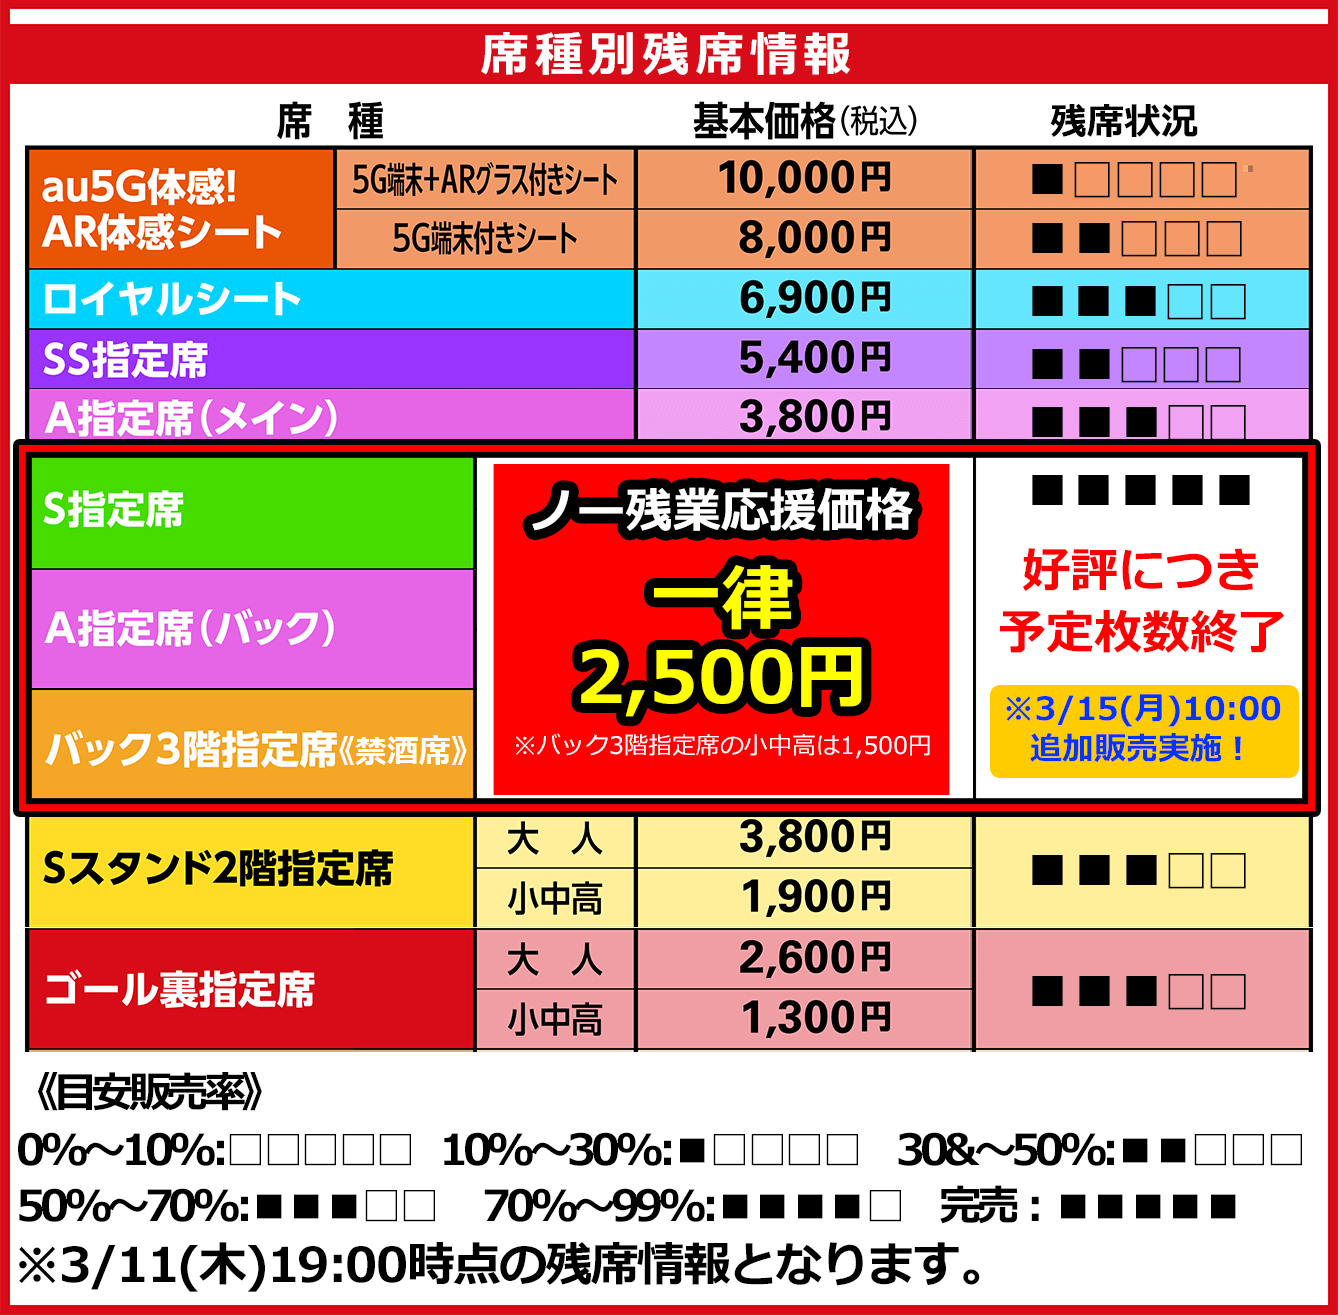 3 17 水 横浜fc戦 チケット残席情報のお知らせ ニュース 名古屋グランパス公式サイト